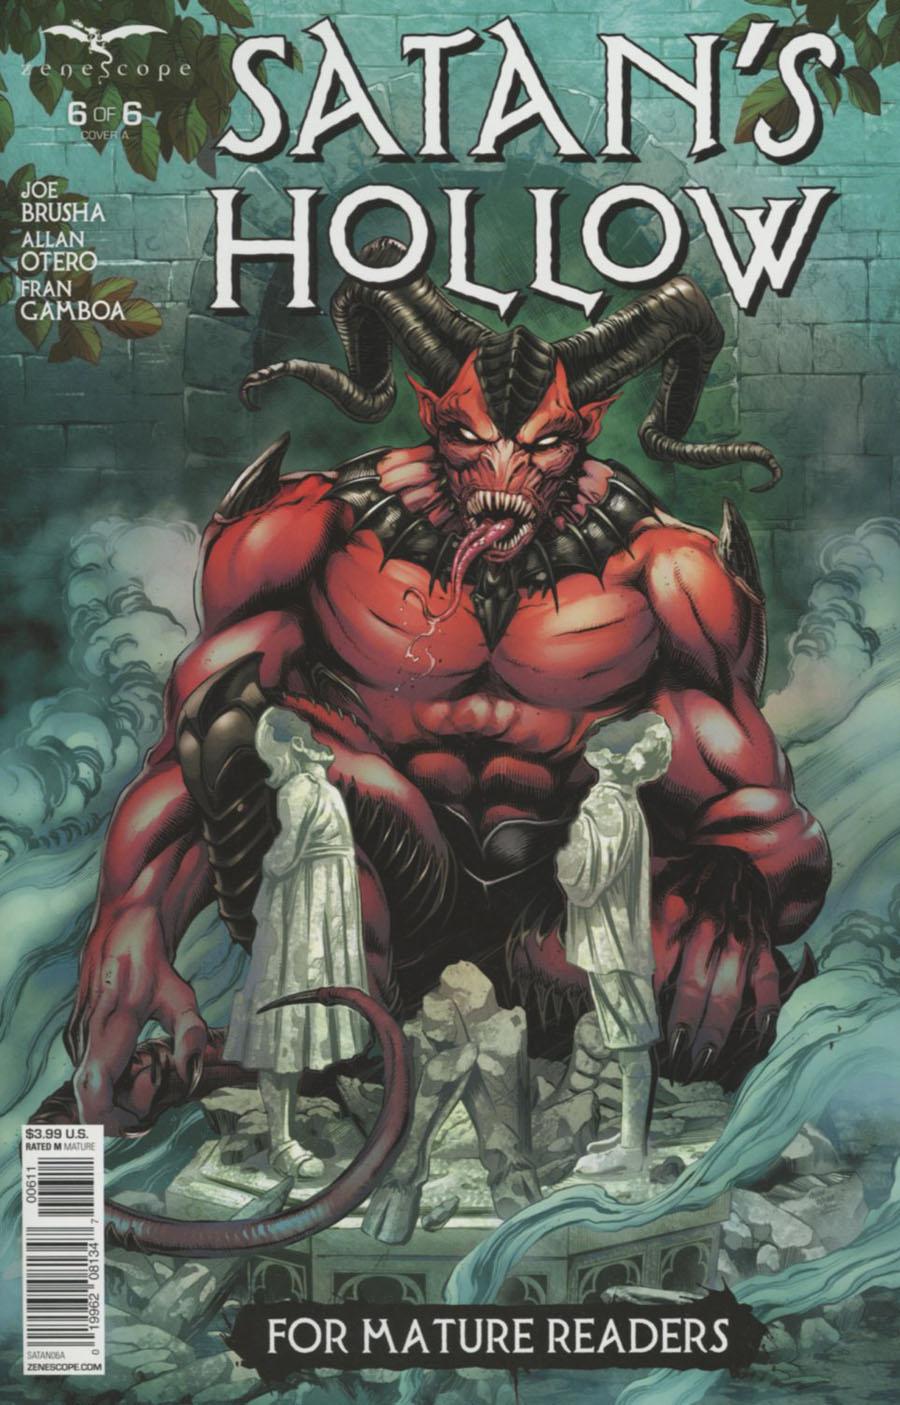 Grimm Fairy Tales Presents Satans Hollow Vol. 1 #6